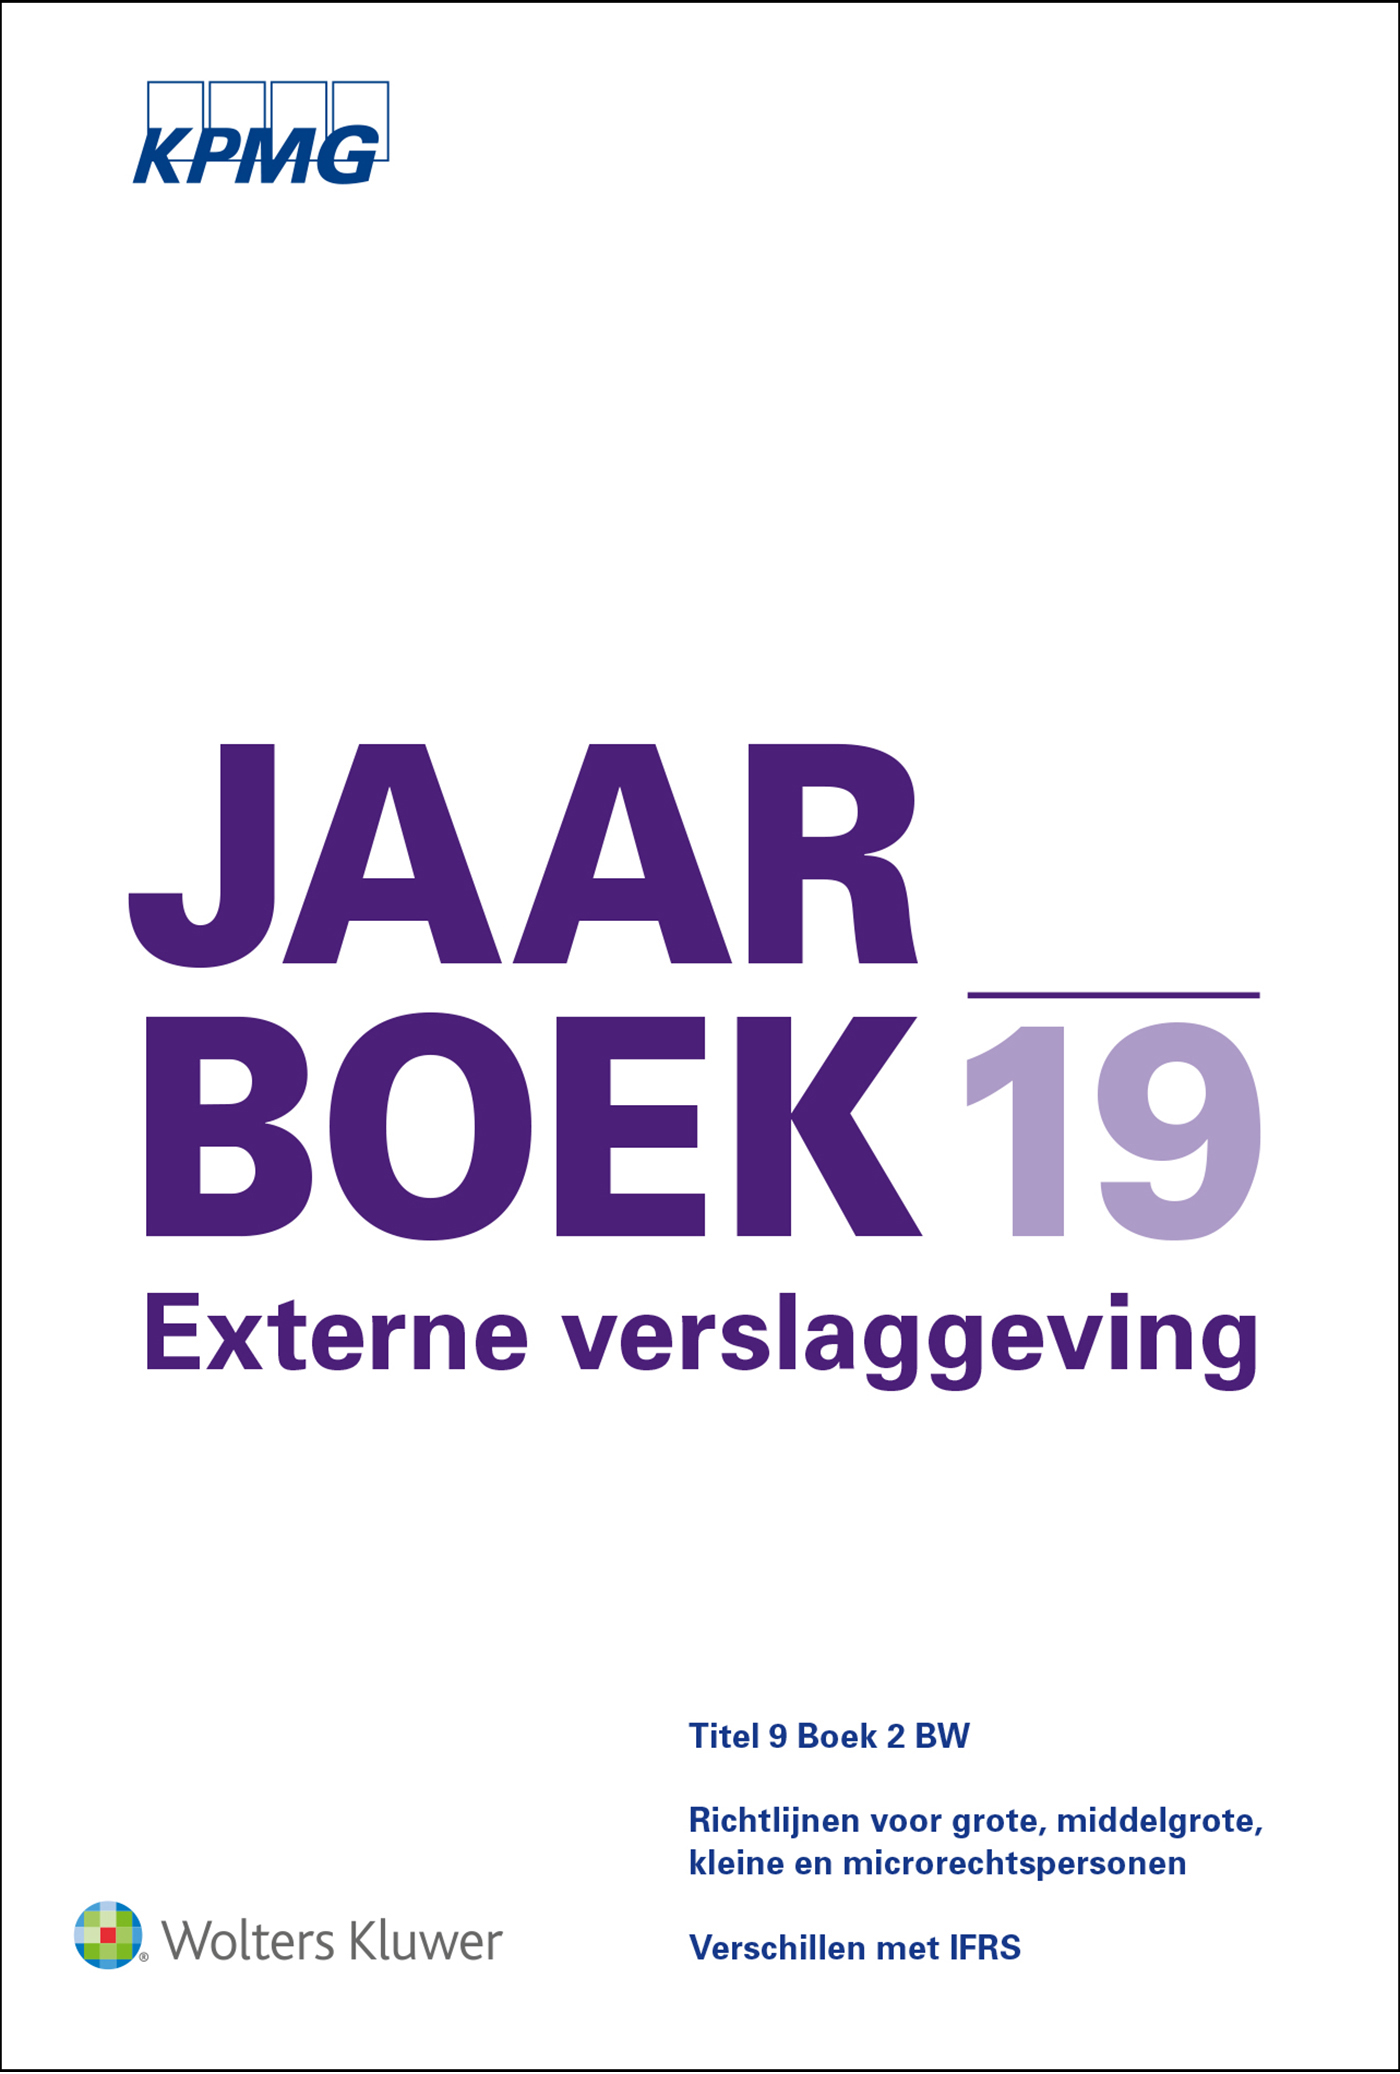 KPMG Jaarboek Externe Verslaggeving / 2019 (Ebook)